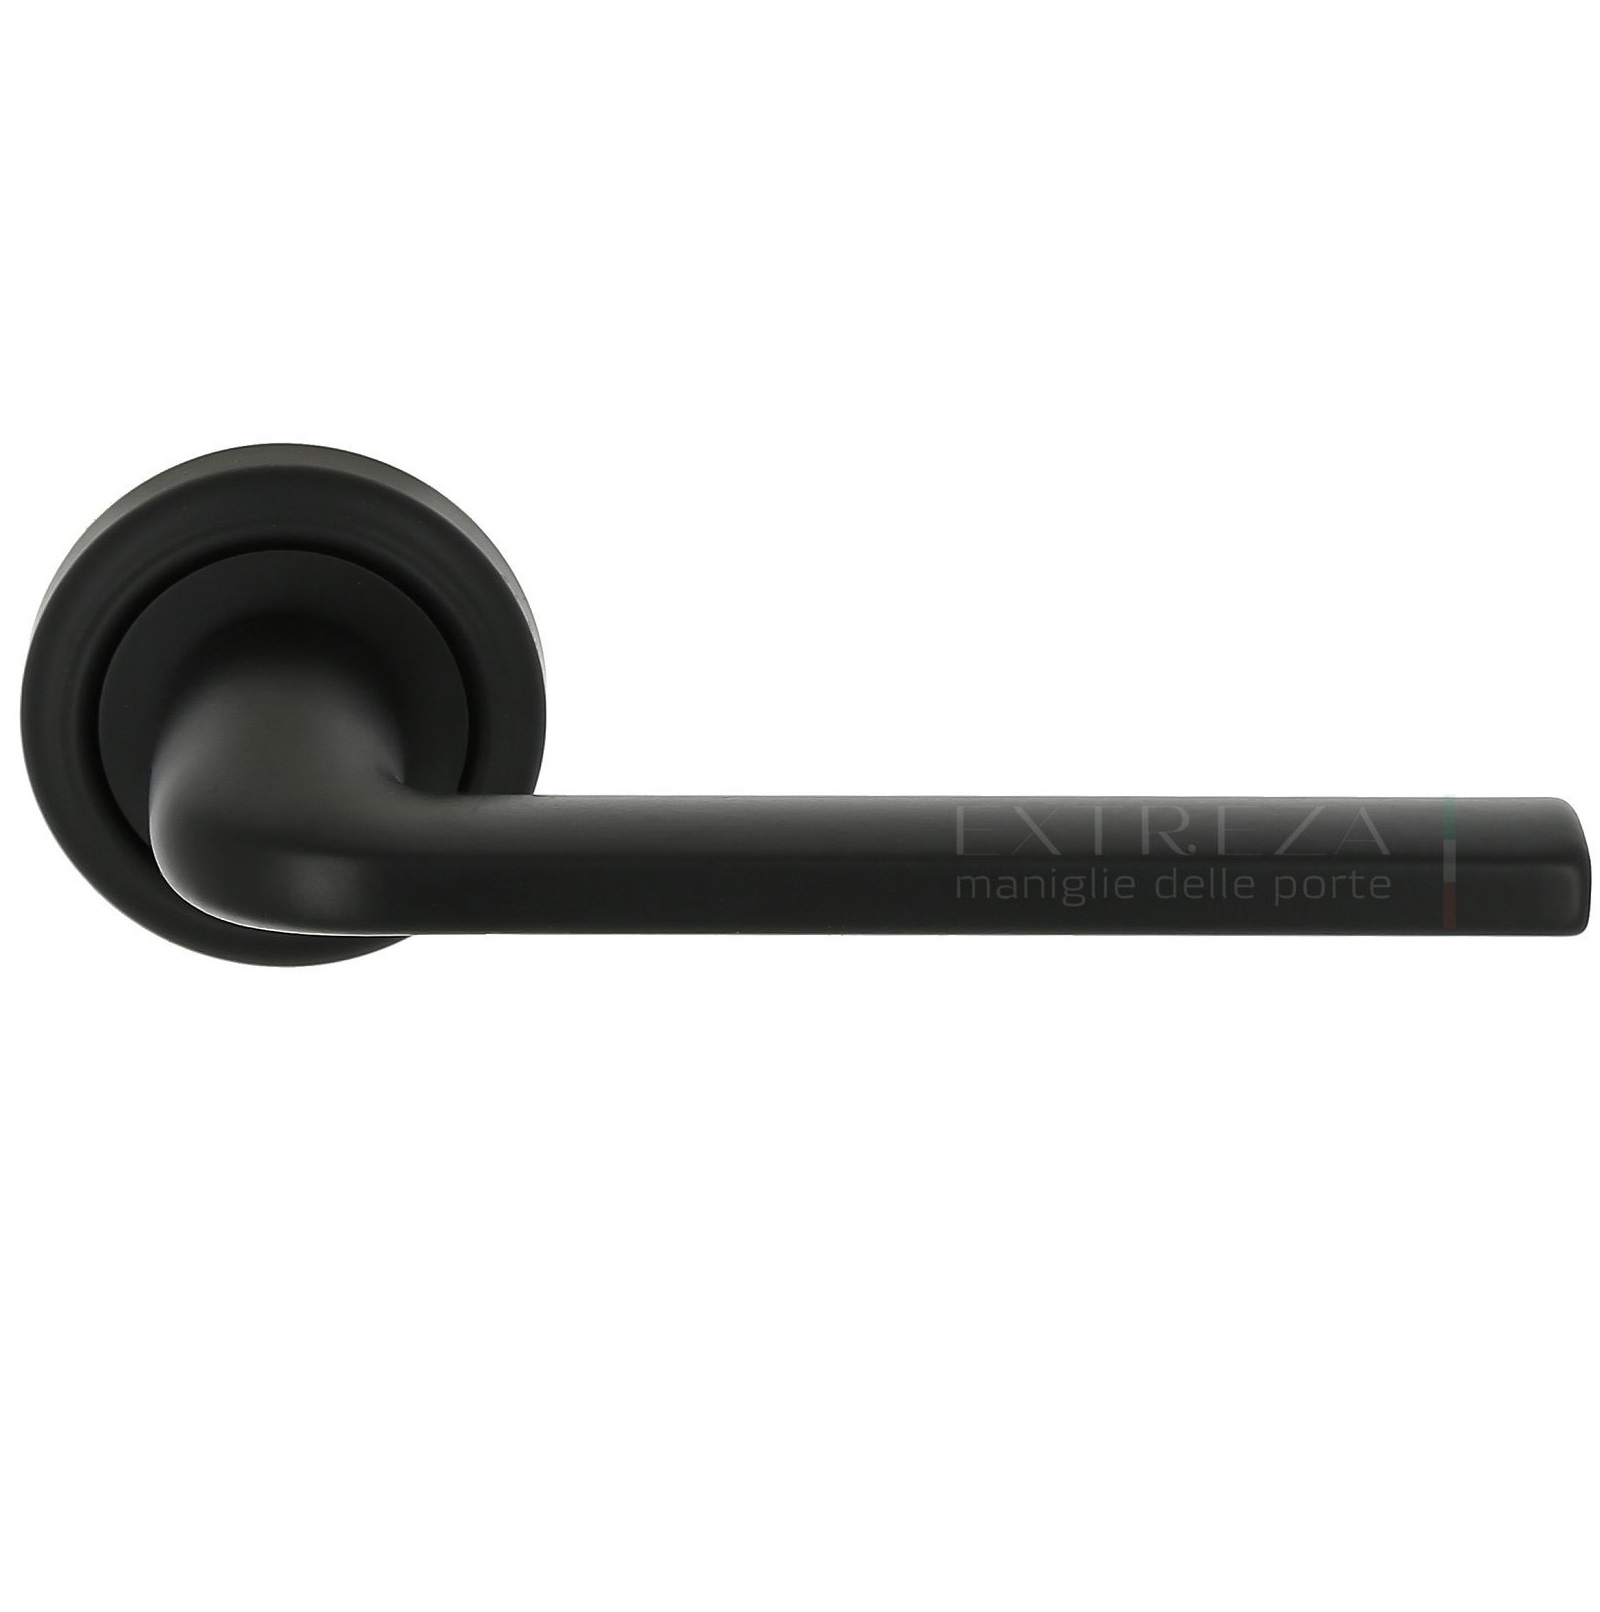 Дверная ручка Extreza "TERNI" (Терни) 320 на розетке R01 черный матовый F22